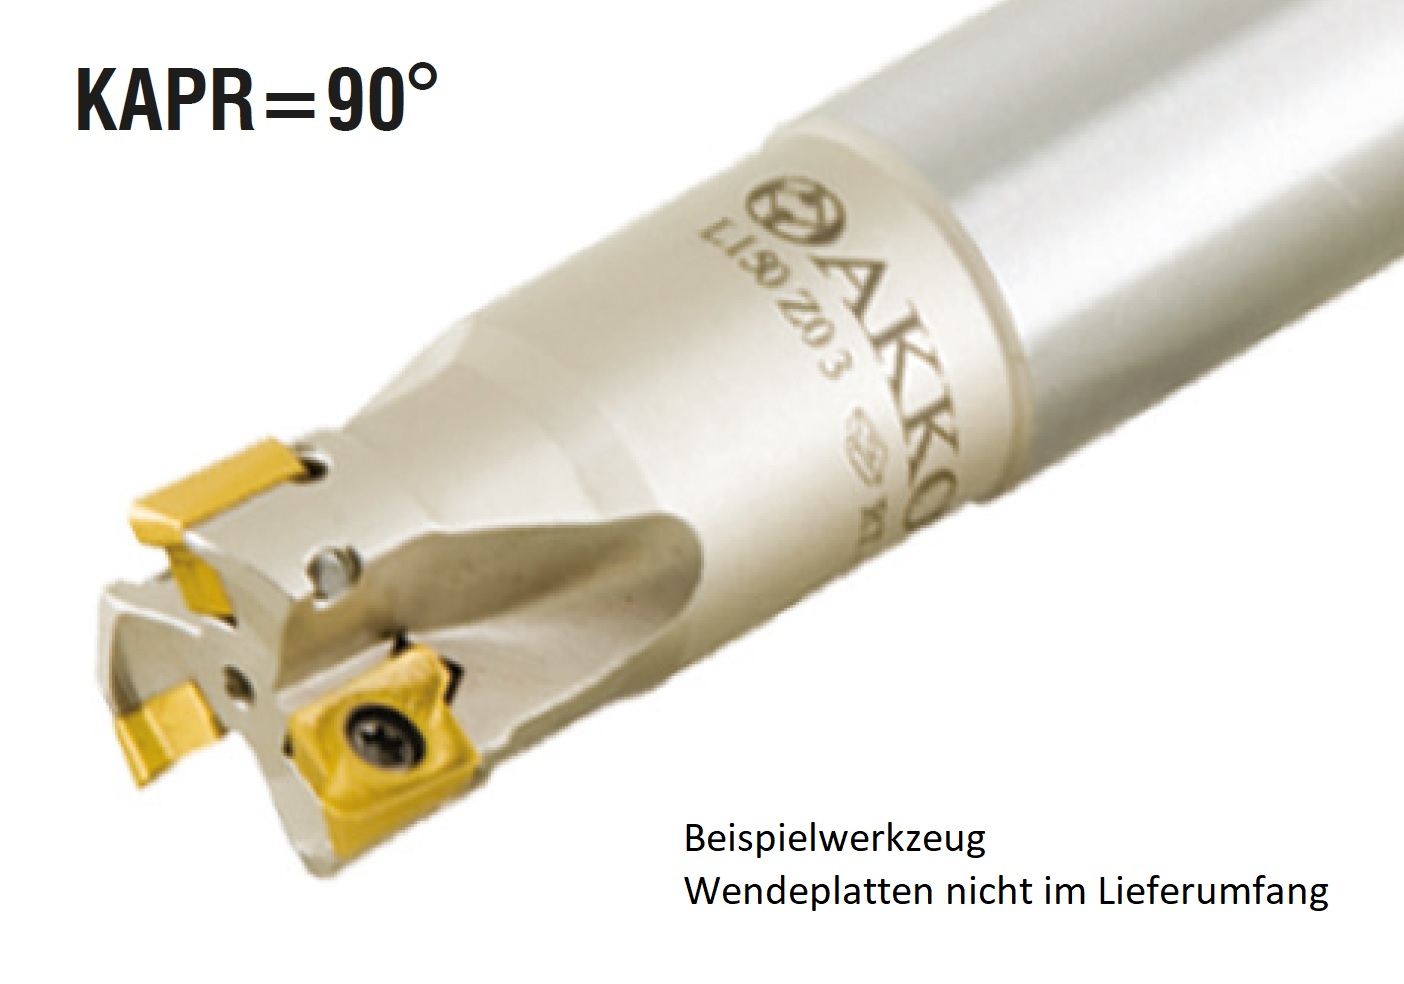 AKKO-Wendeplatten-Schaftfräser ø 18 mm, 90°, kompatibel mit Safety-Pramet RT 1003
Schaft-ø 16, mit Innenkühlung, Z=2